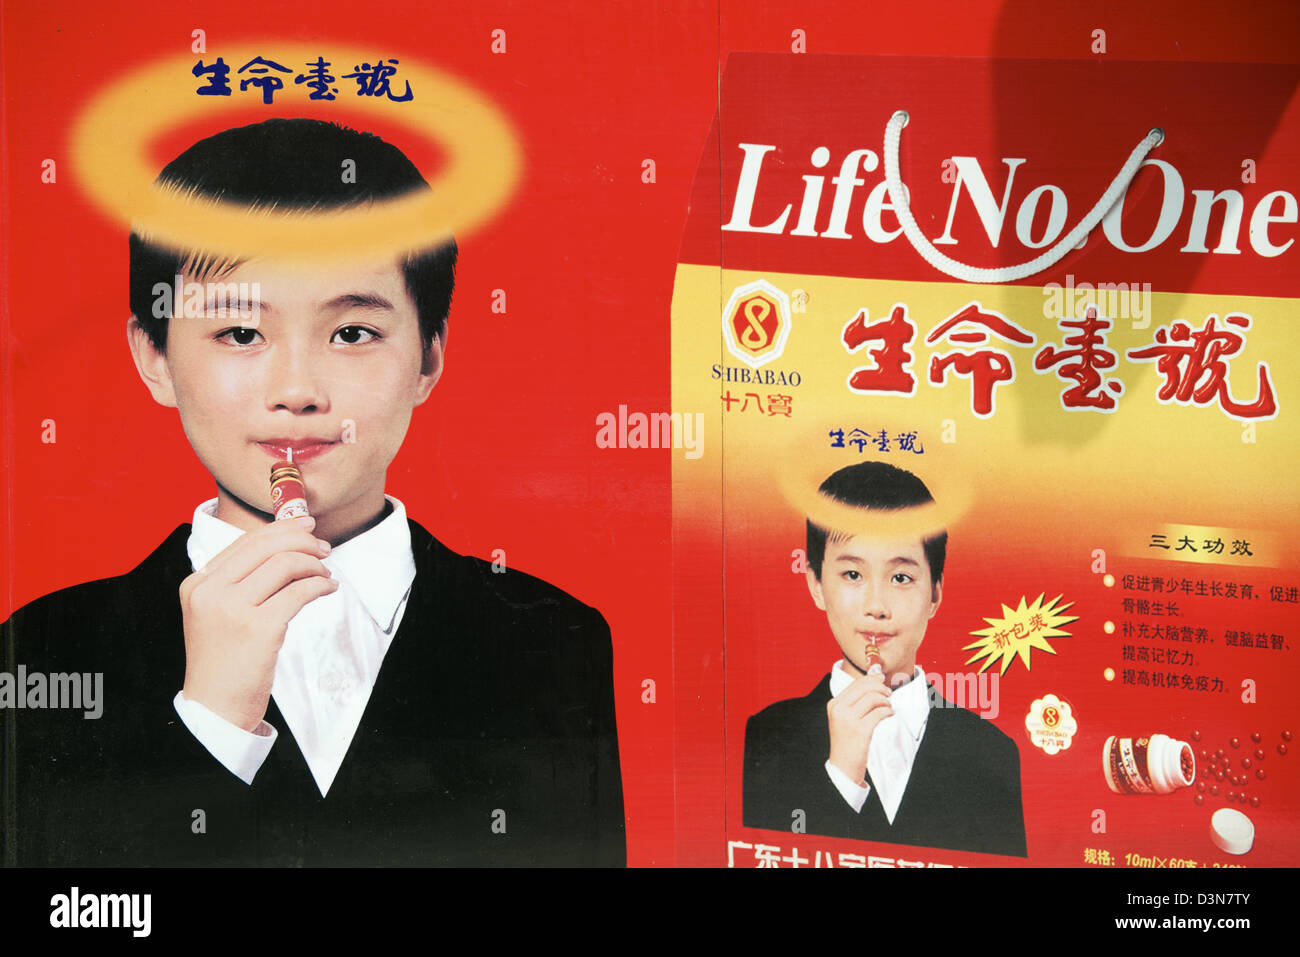 Advertisement of SHENG-MING-YI-HAO or Life No. One health food in Nanchang, Jiangxi, China. Stock Photo